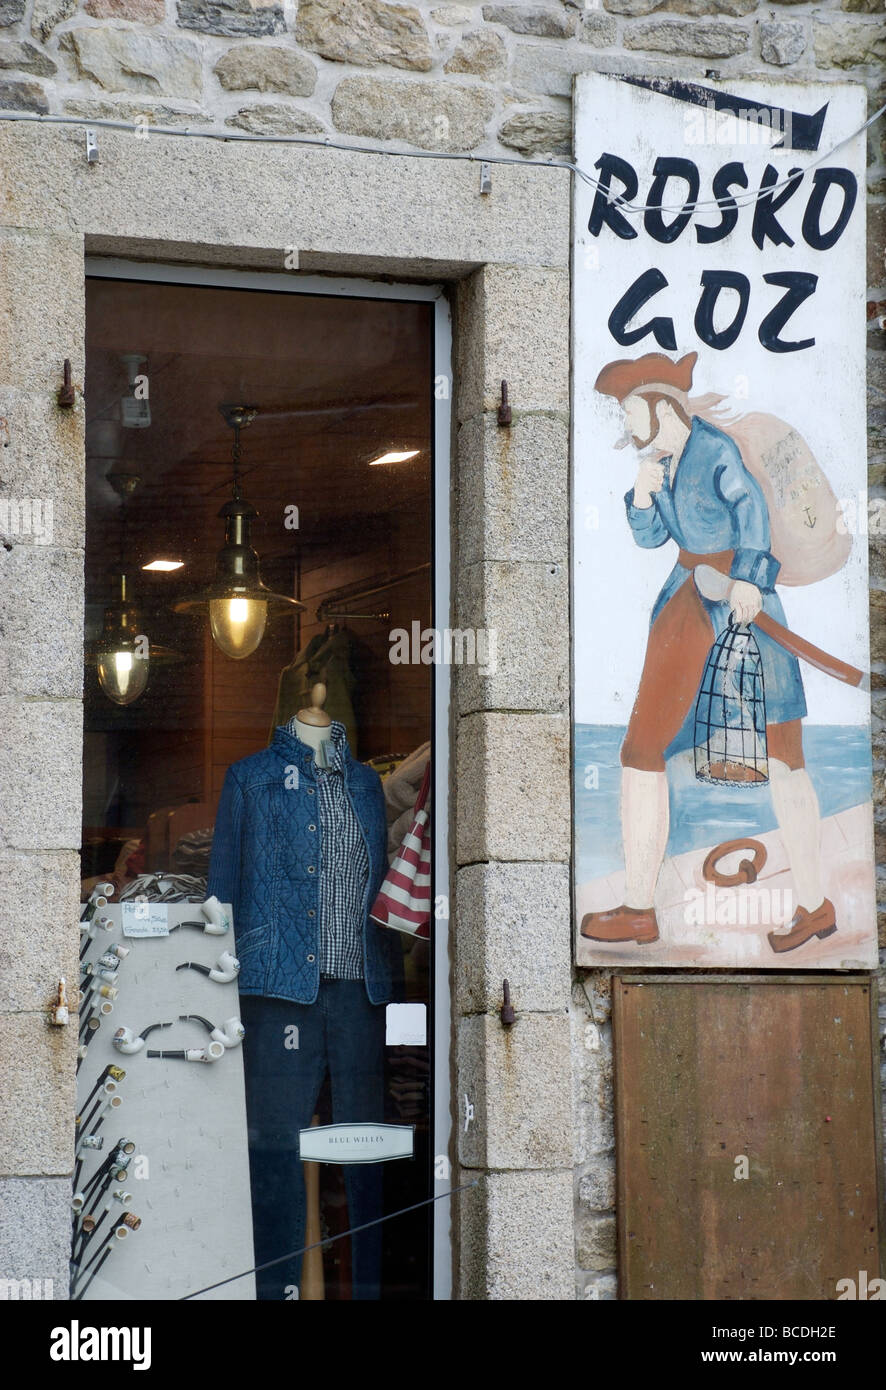 Rosko Goz Mariner Schild Bekleidungsgeschäft, Roscoff, Bretagne, Frankreich Stockfoto